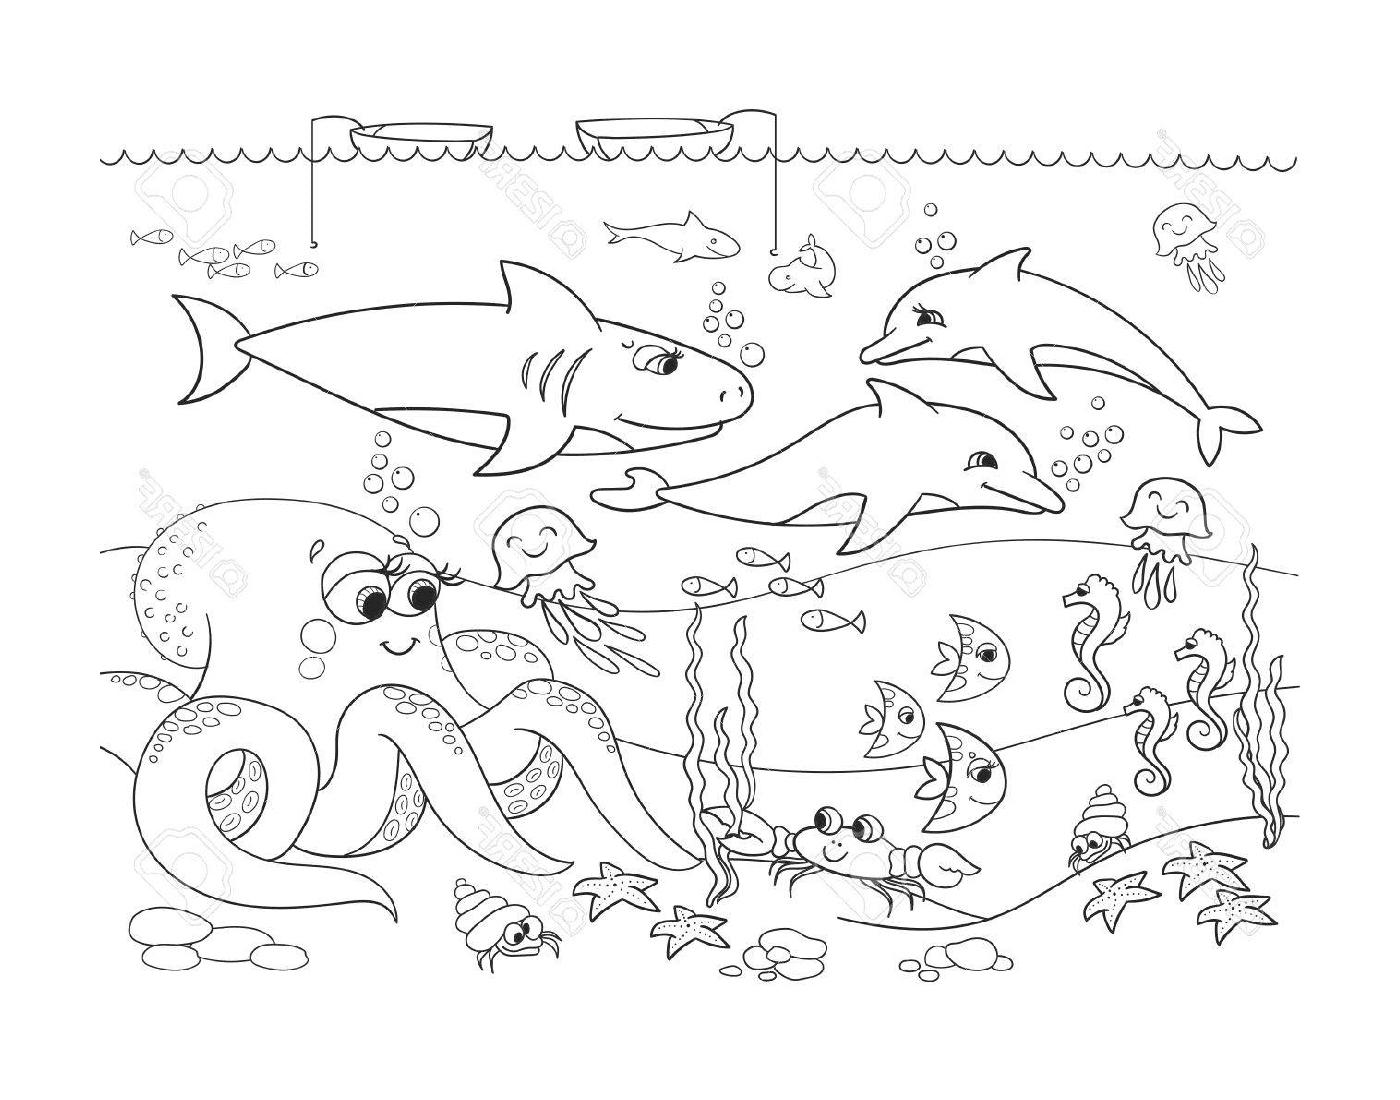  una escena submarina con muchos animales diferentes 